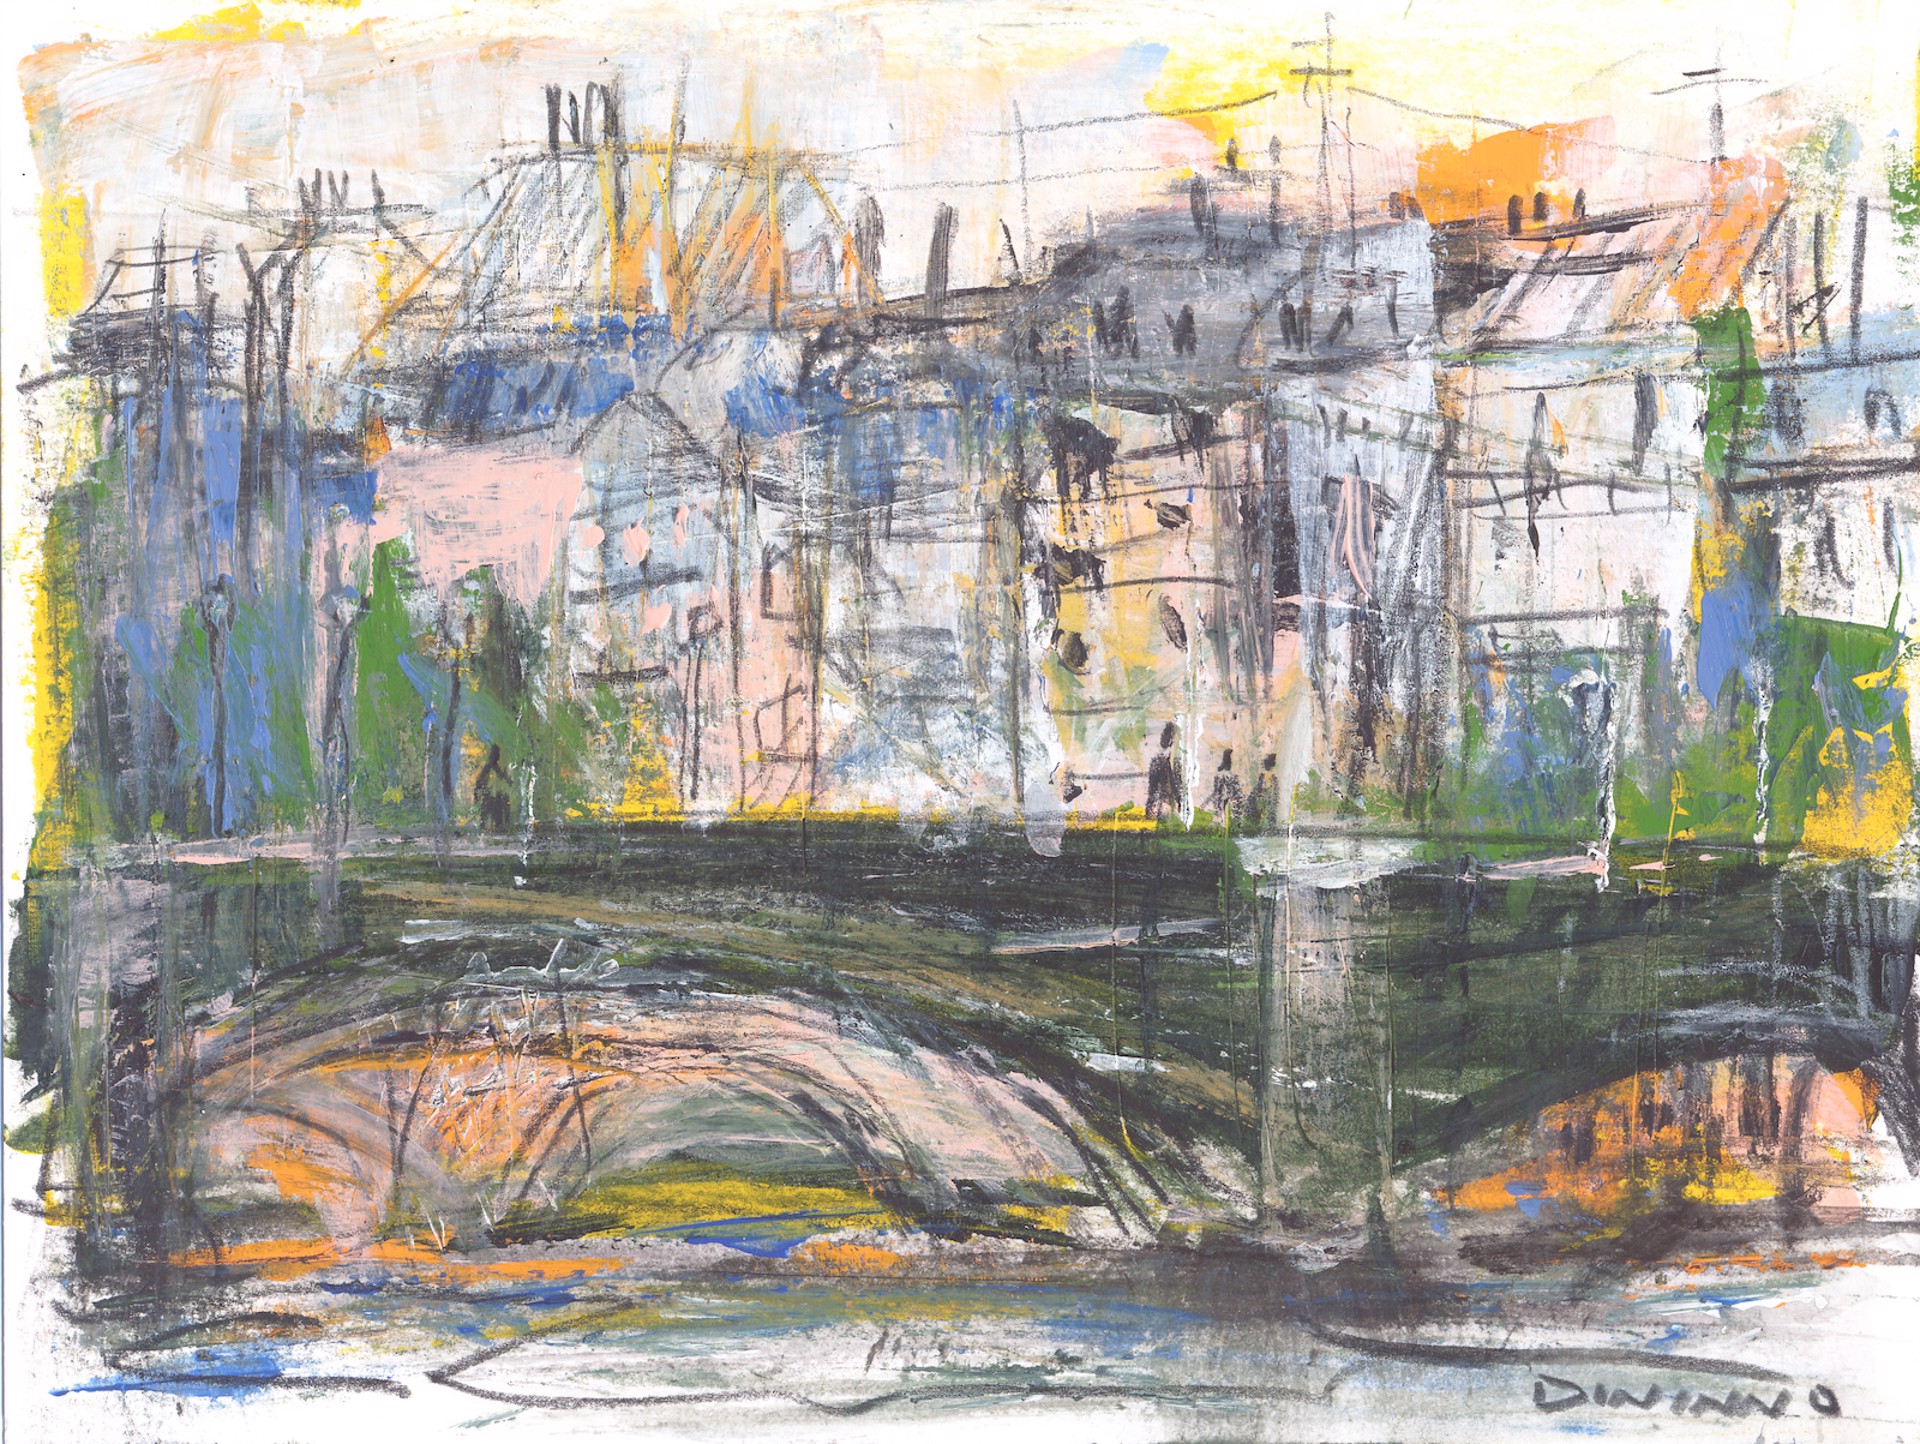 The Seine by Steve Dininno